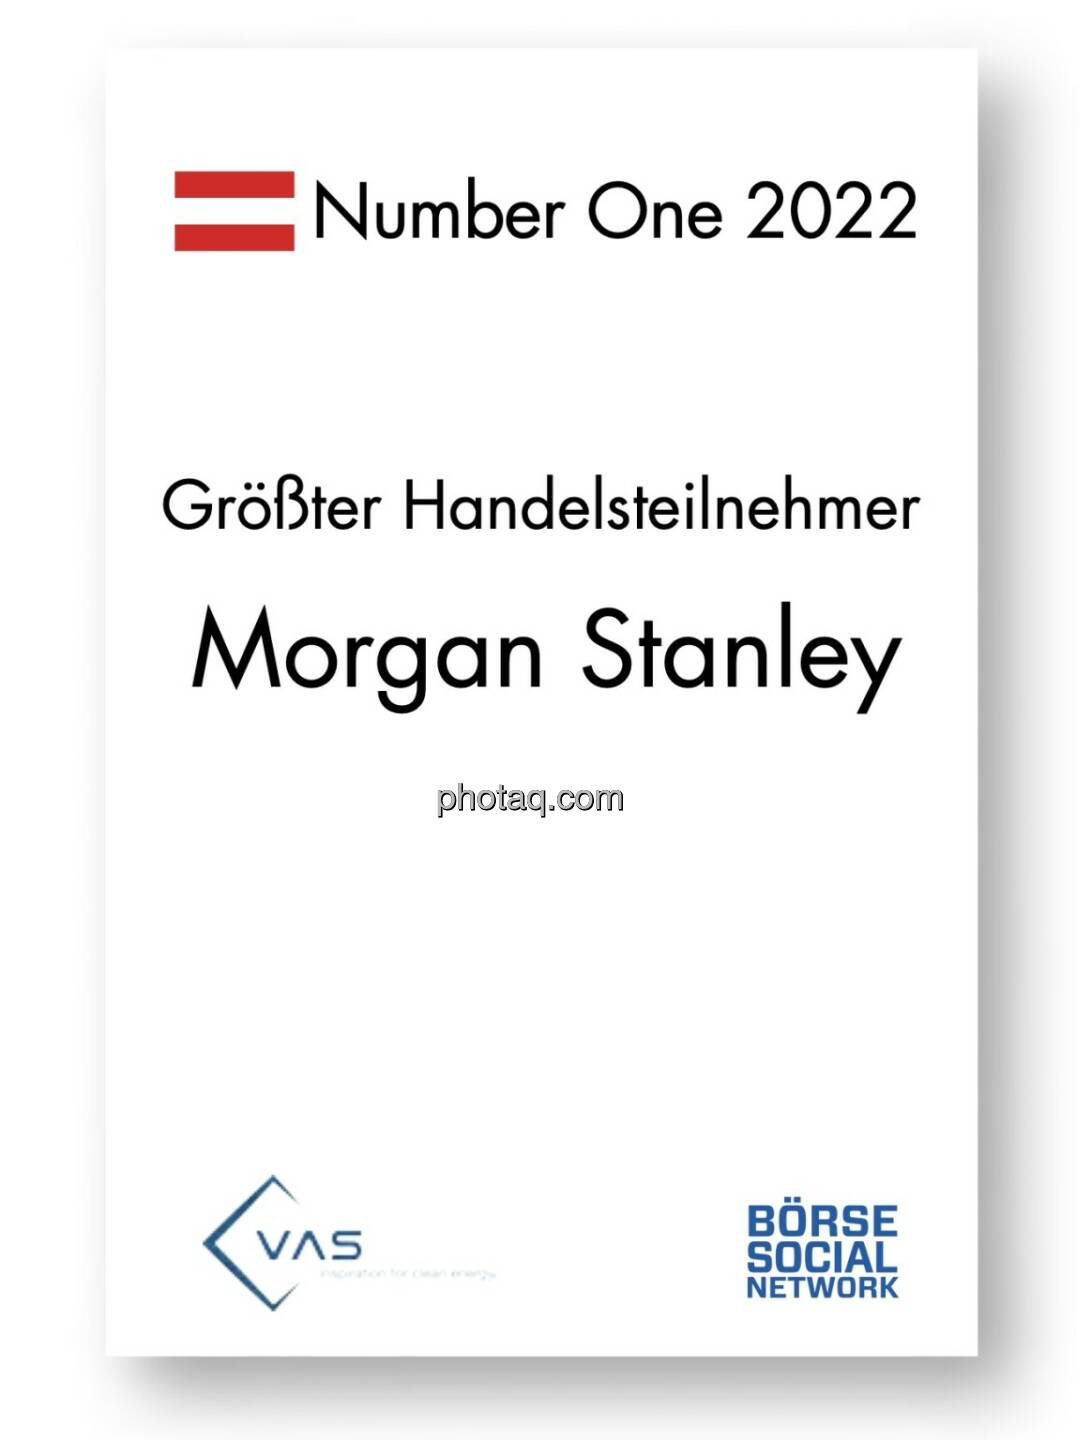 Number One Größter Handelsteilnehmer: Morgan Stanley